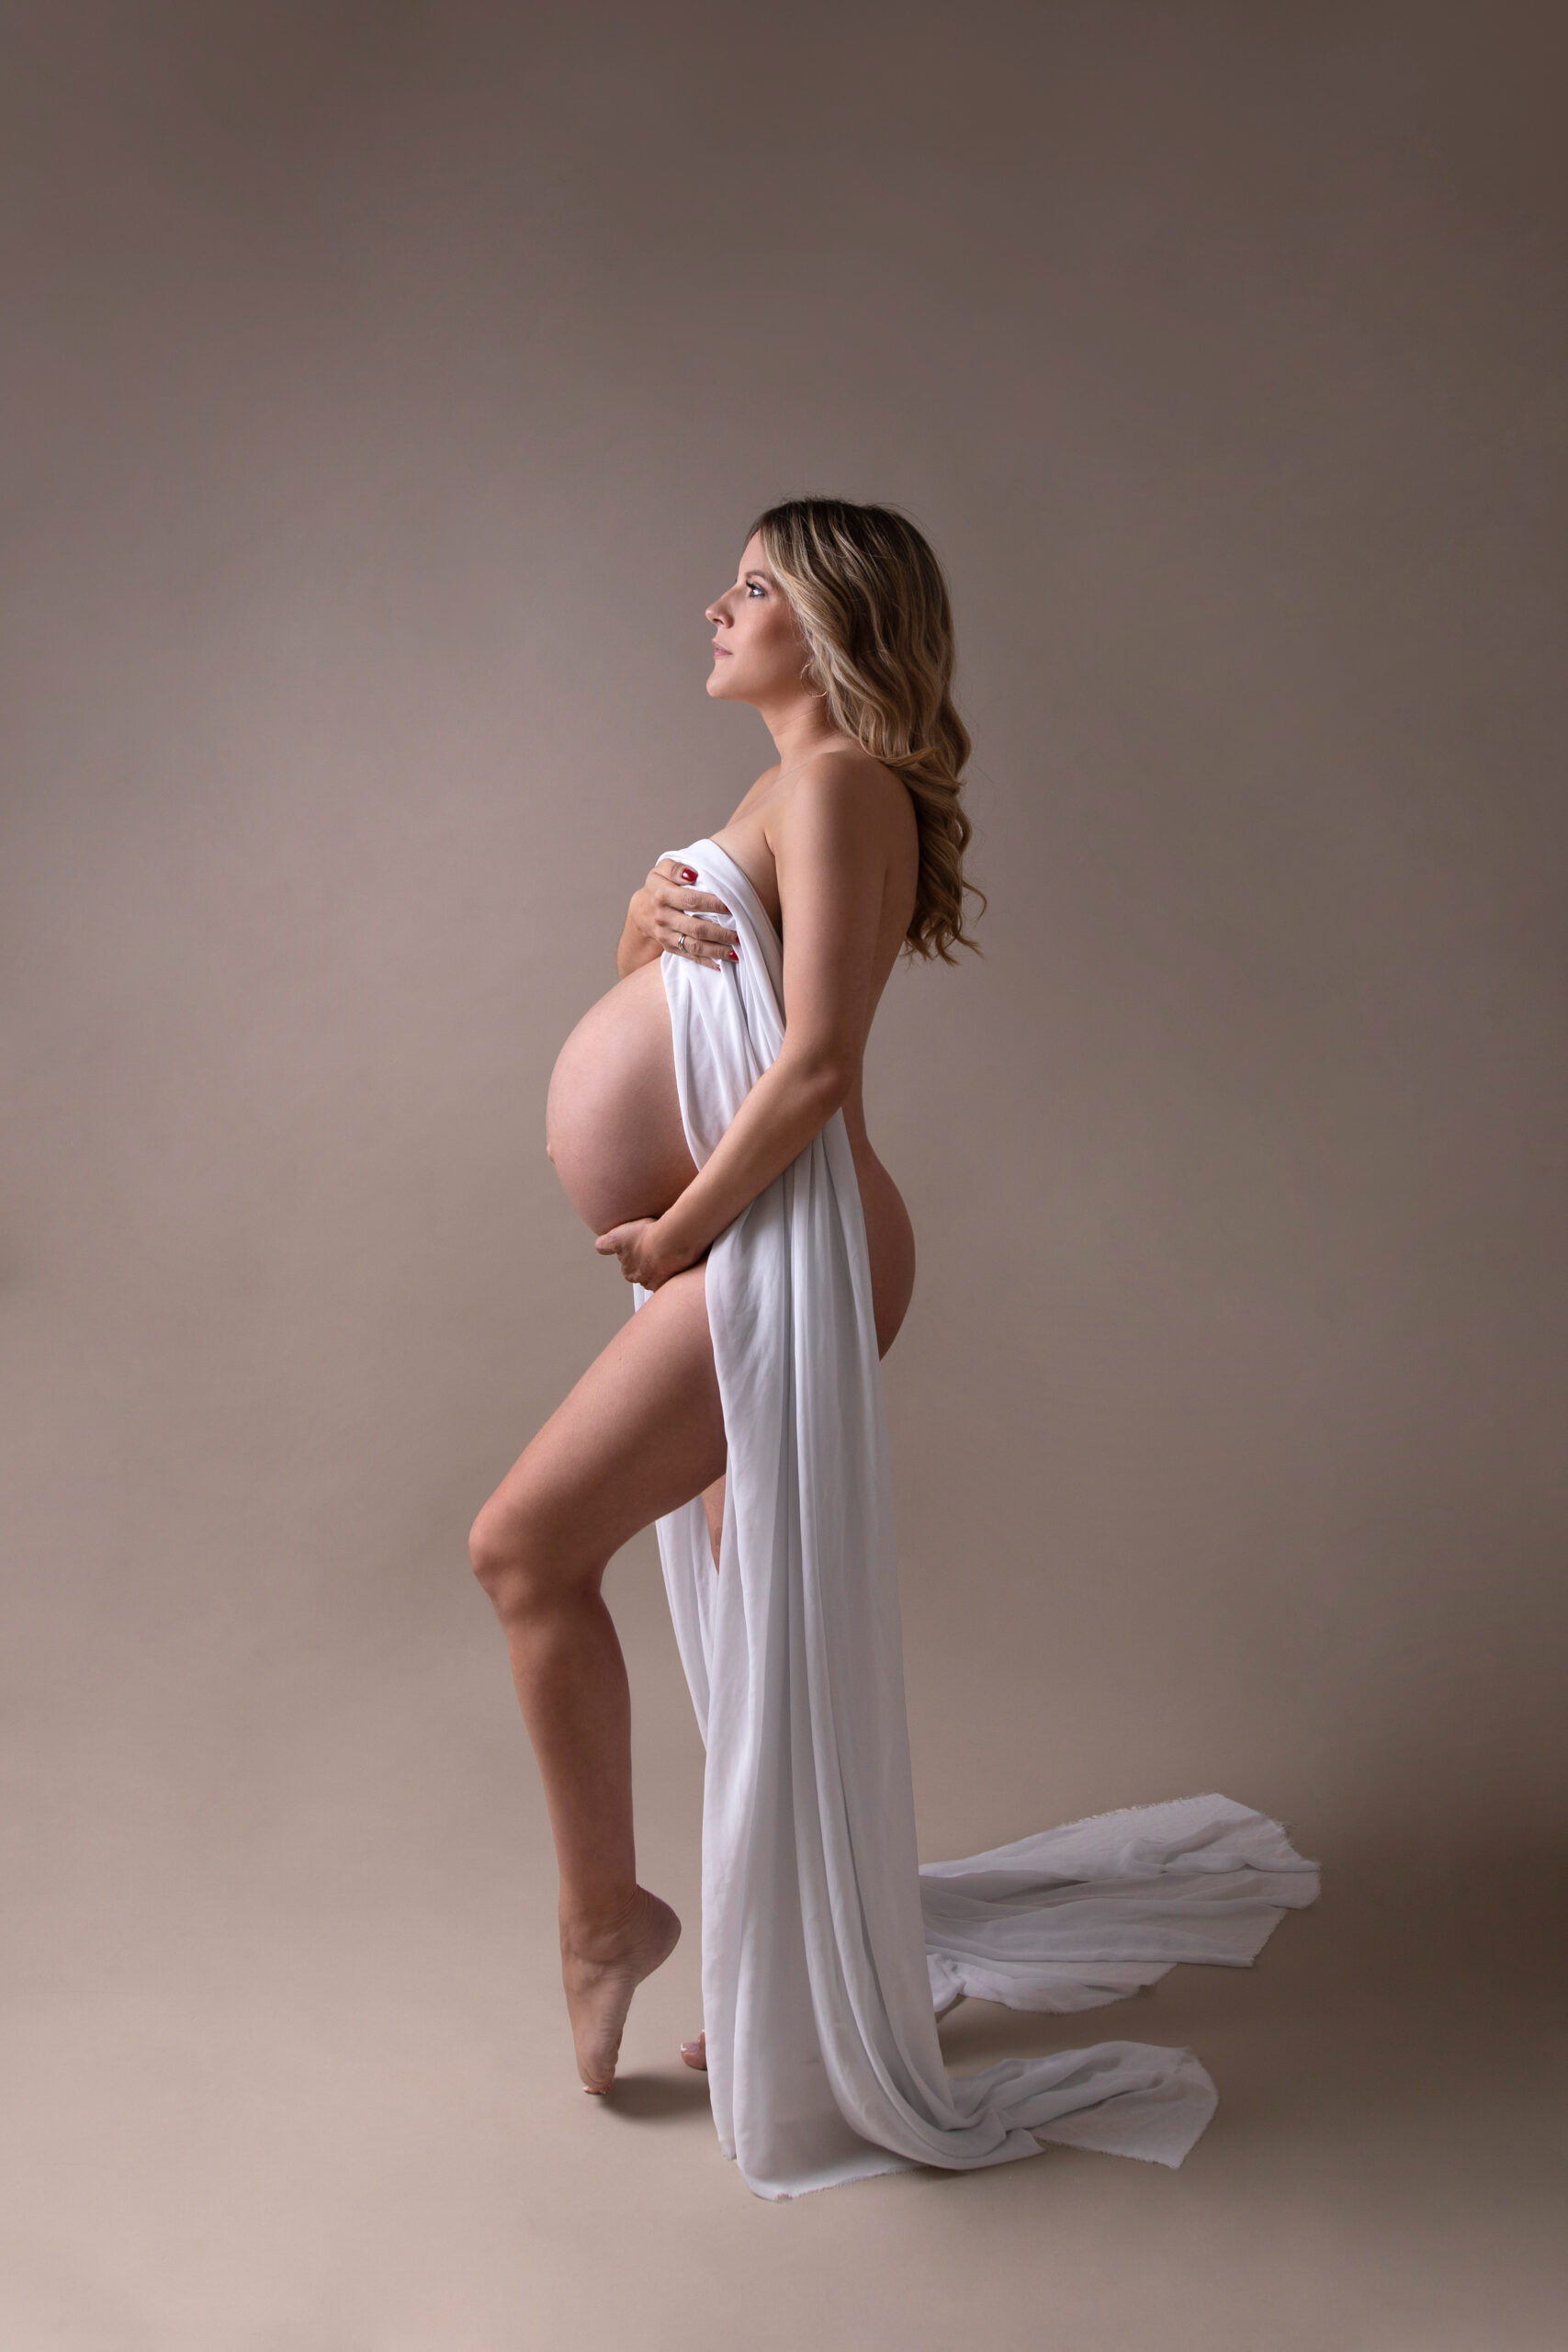 Photographie de femme enceinte en studio à Rosny sous bois Photographe de studio maternité naissance nouveau-né bébé grossesse val de marne seine saint denis